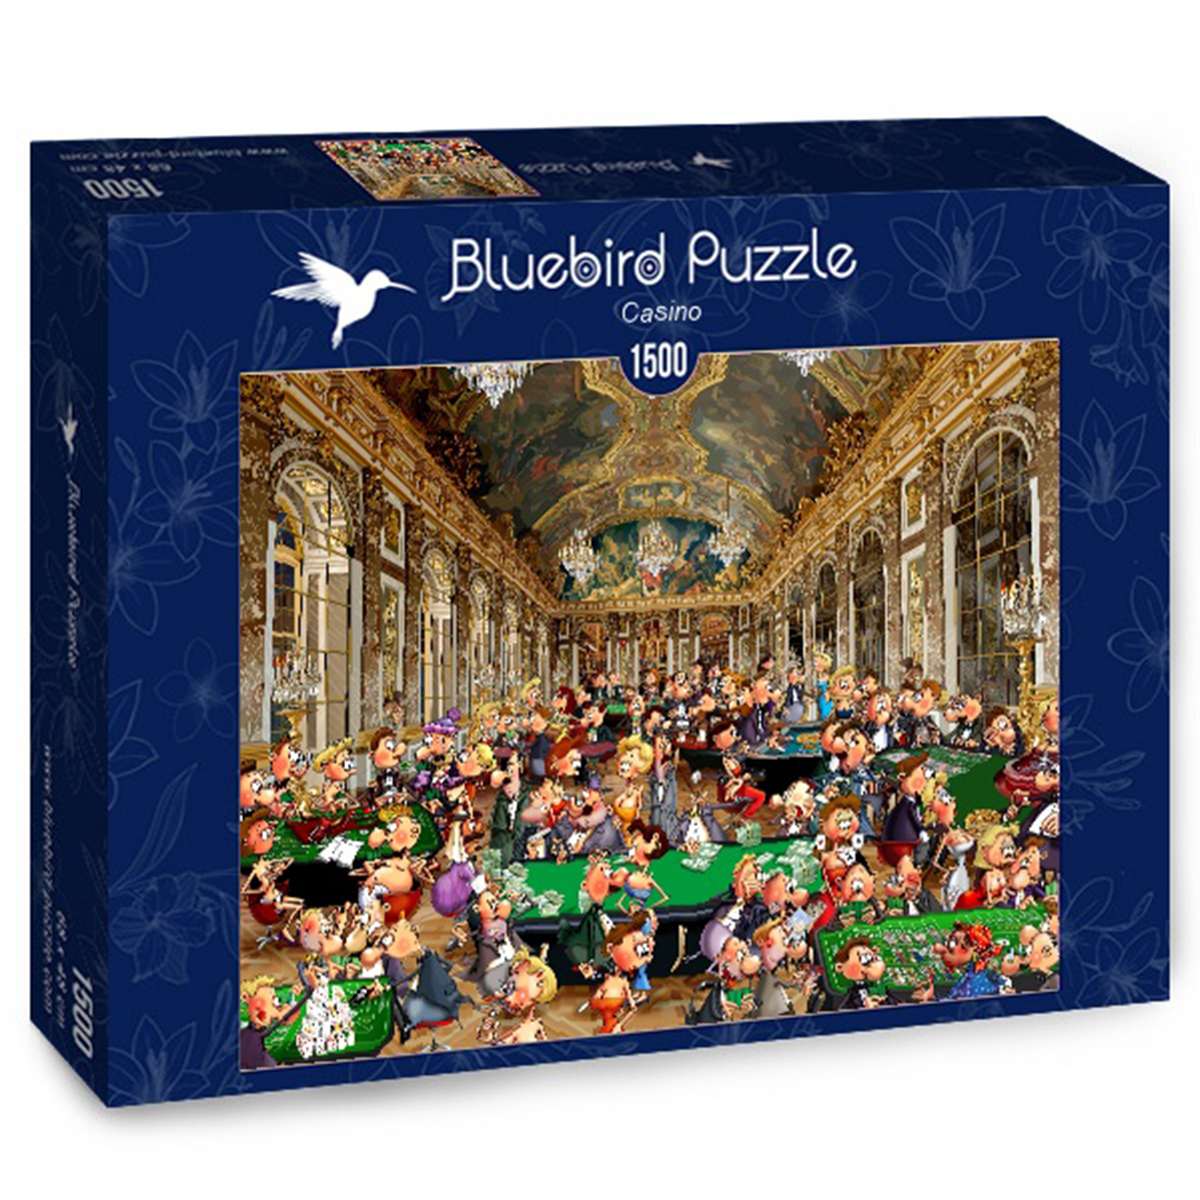 Puzzle Bluebird El Casino de 1500 piezas